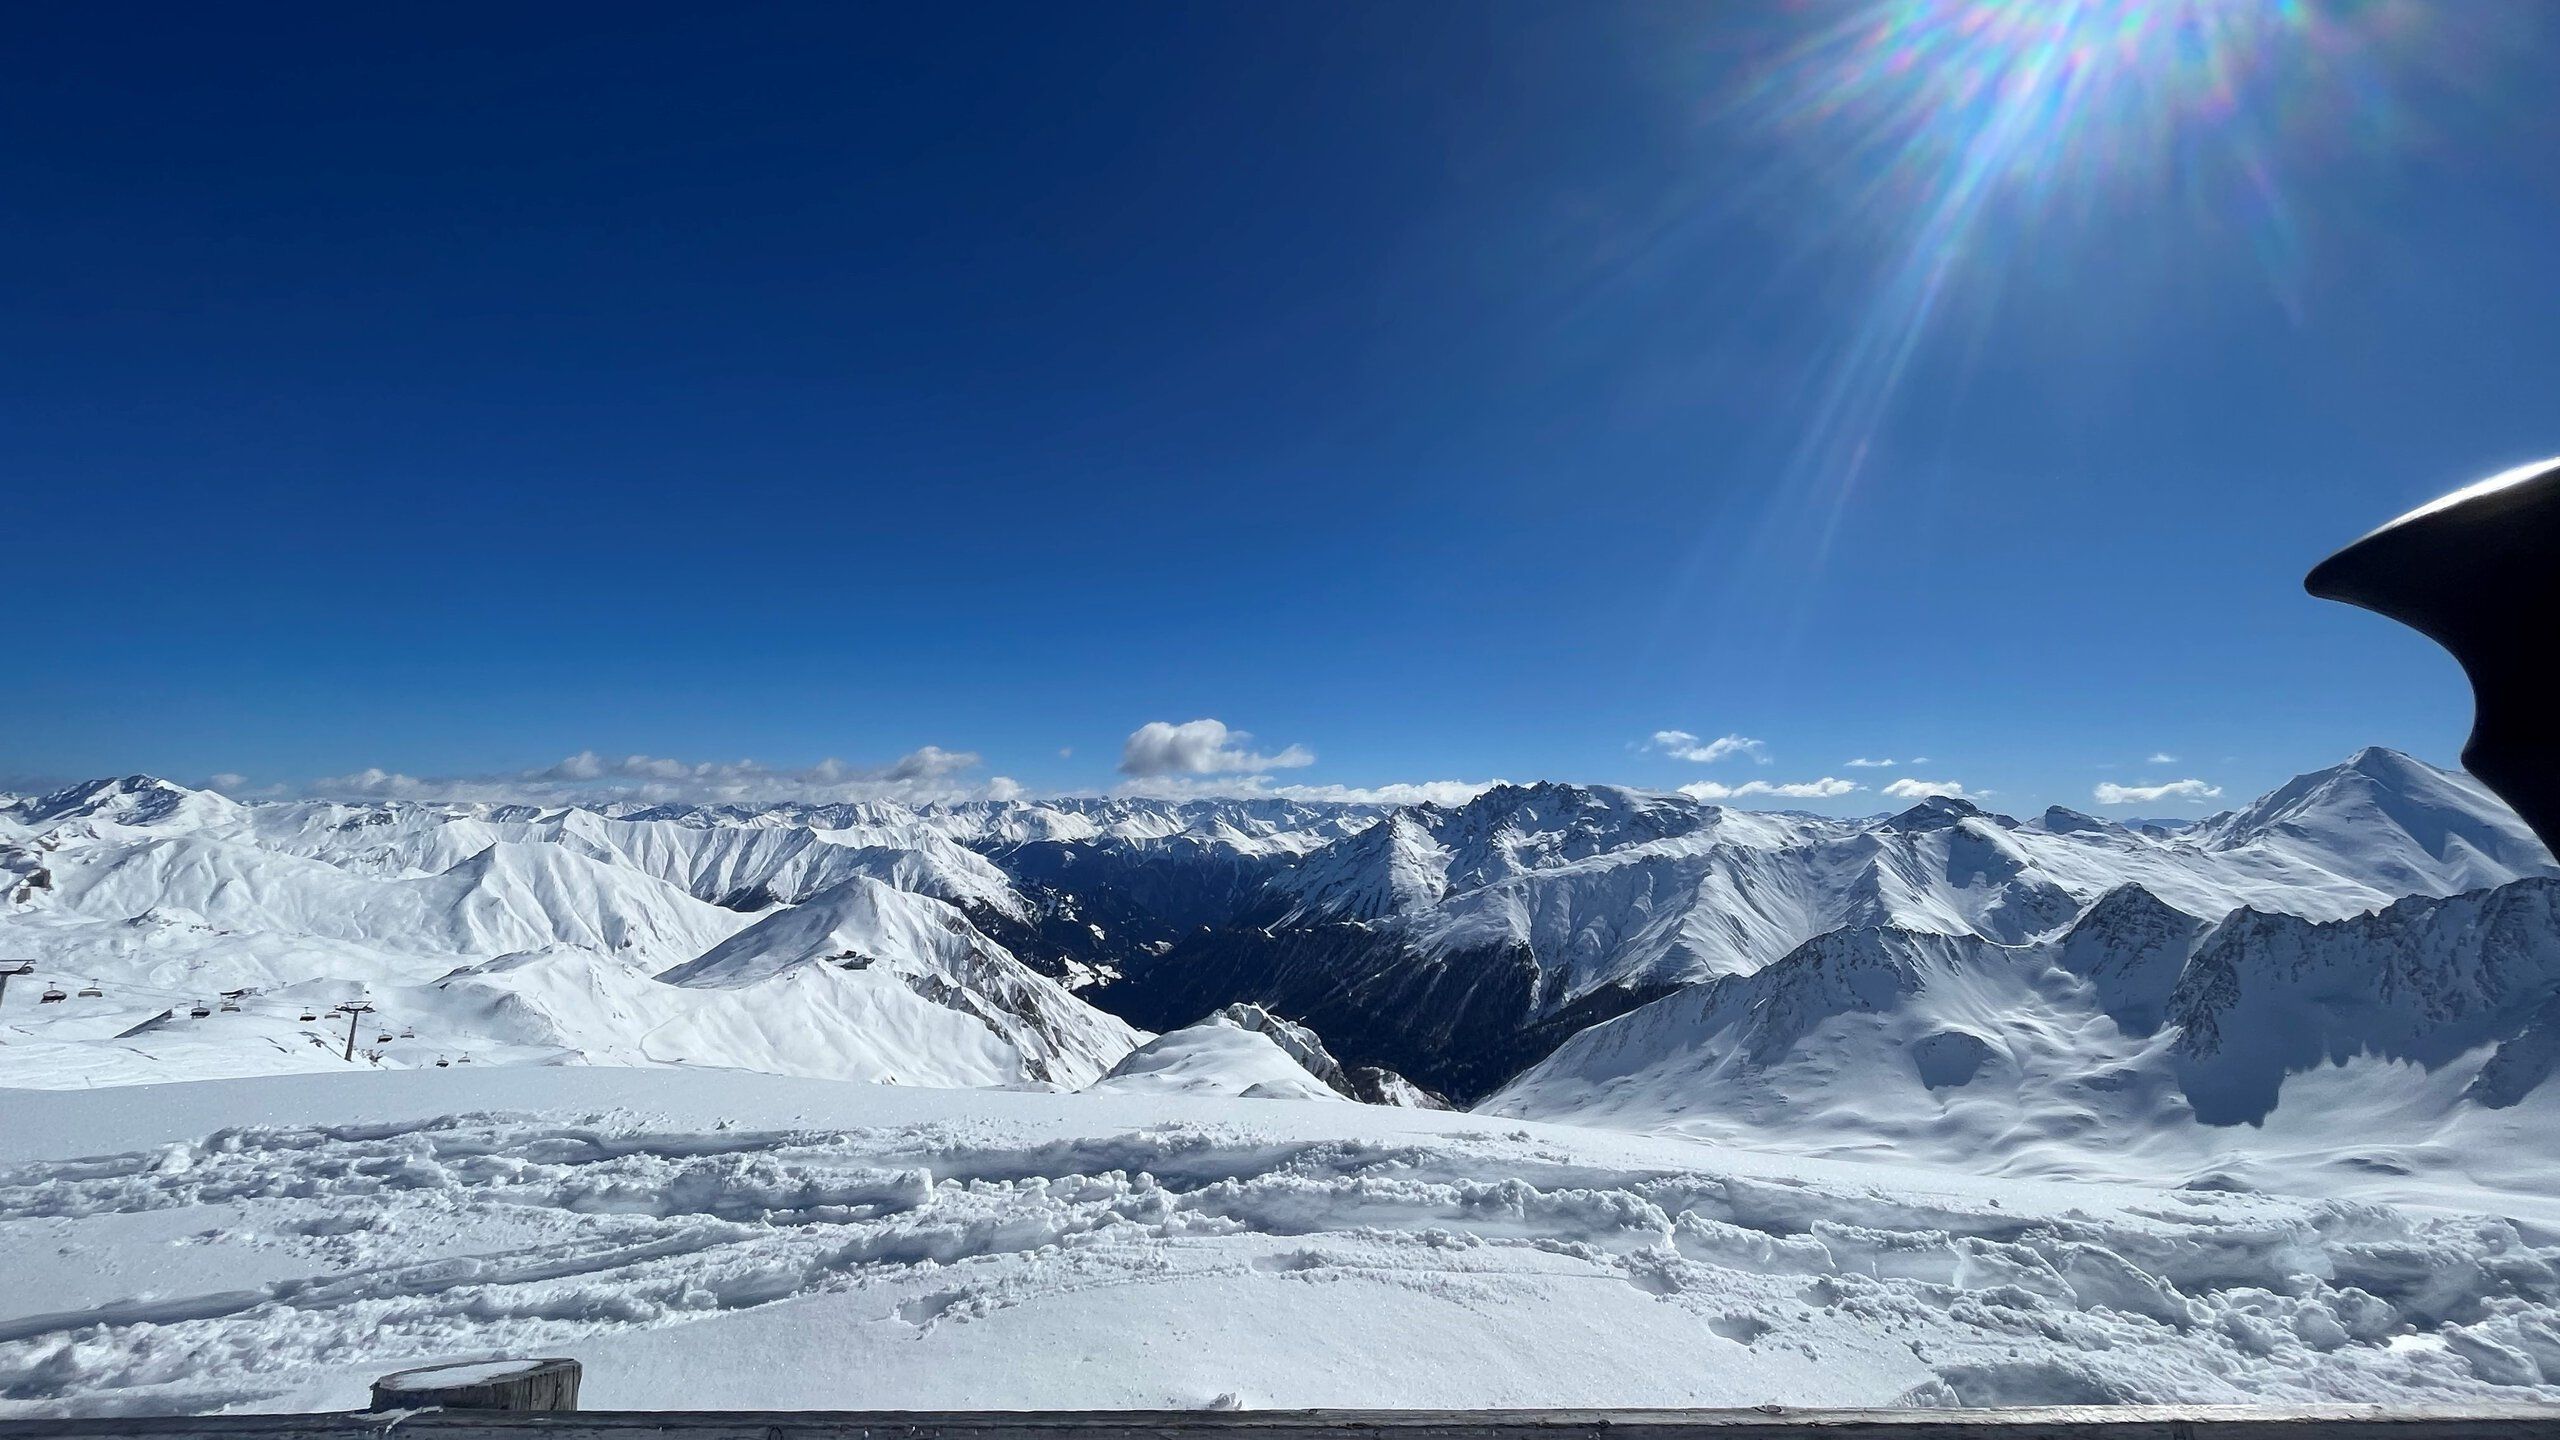 Ein Blick über schneebedeckte Bergspitzen unter blauem Himmel.